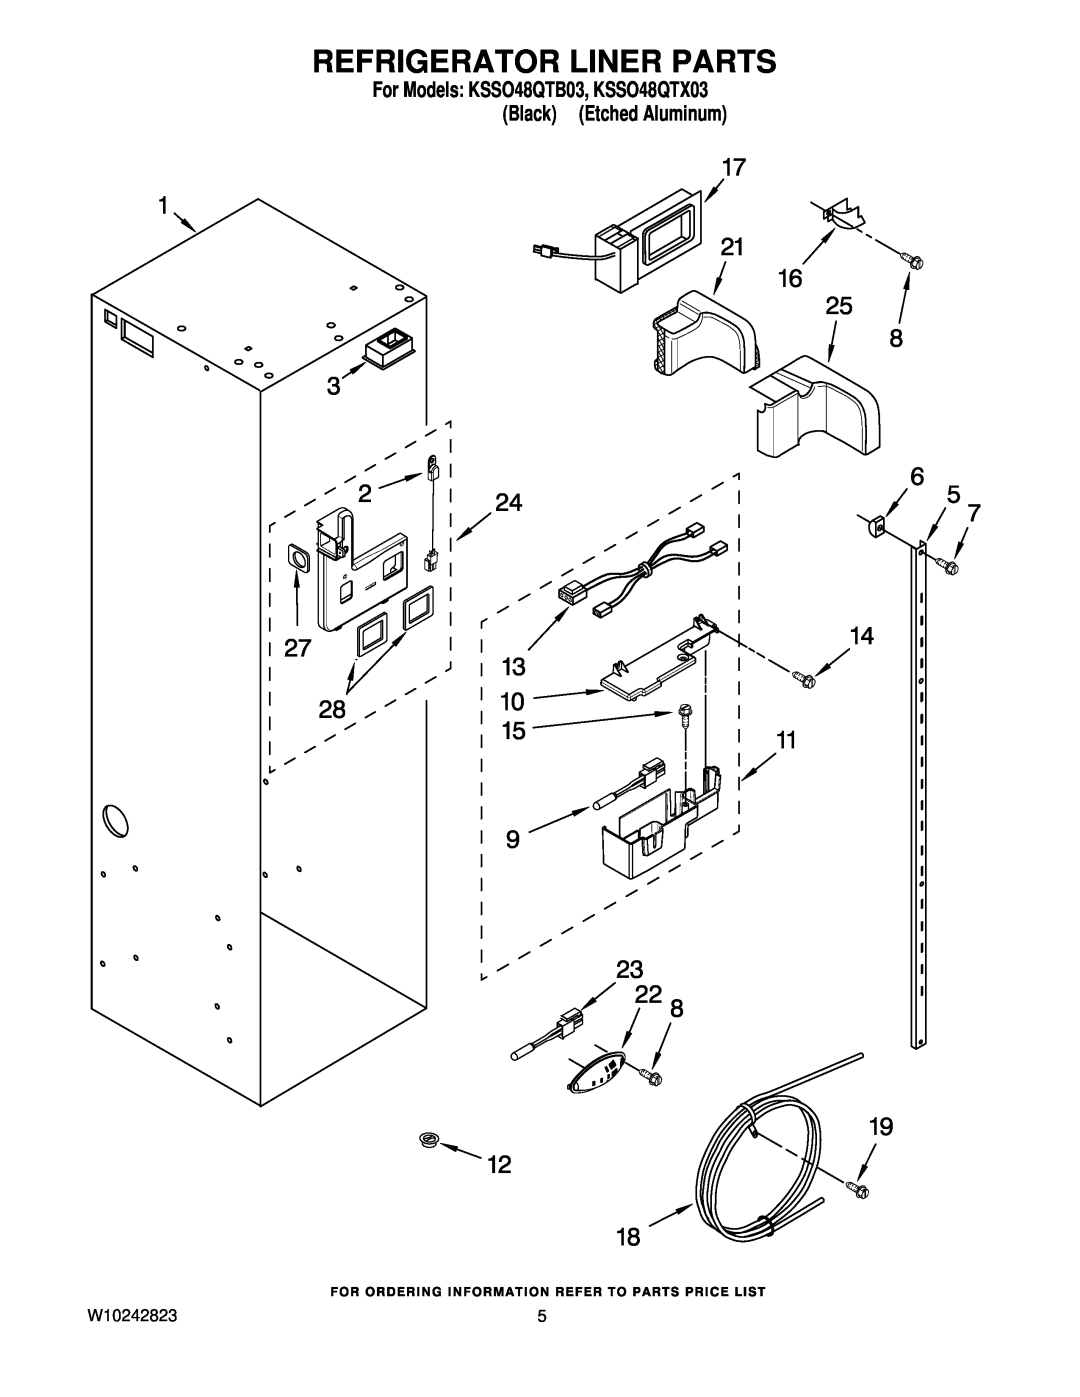 KitchenAid manual Refrigerator Liner Parts, For Models KSSO48QTB03, KSSO48QTX03 Black Etched Aluminum 